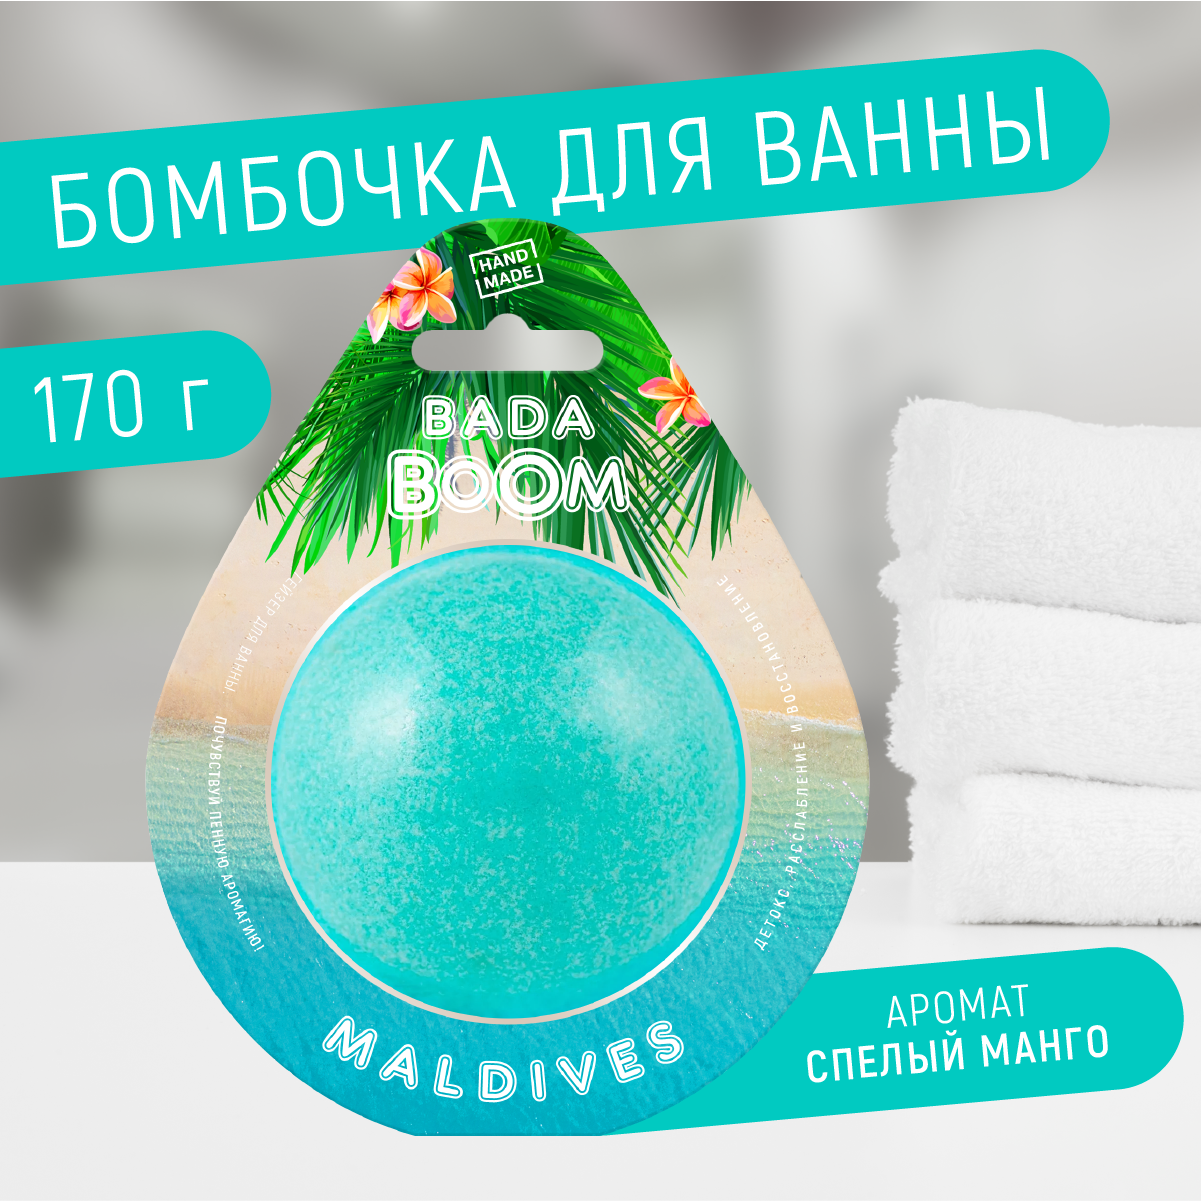 Бомбочка для ванны BADA BOOM Maldives манго 170 г соль для ванны верь в мечту 150 г аромат ягодный